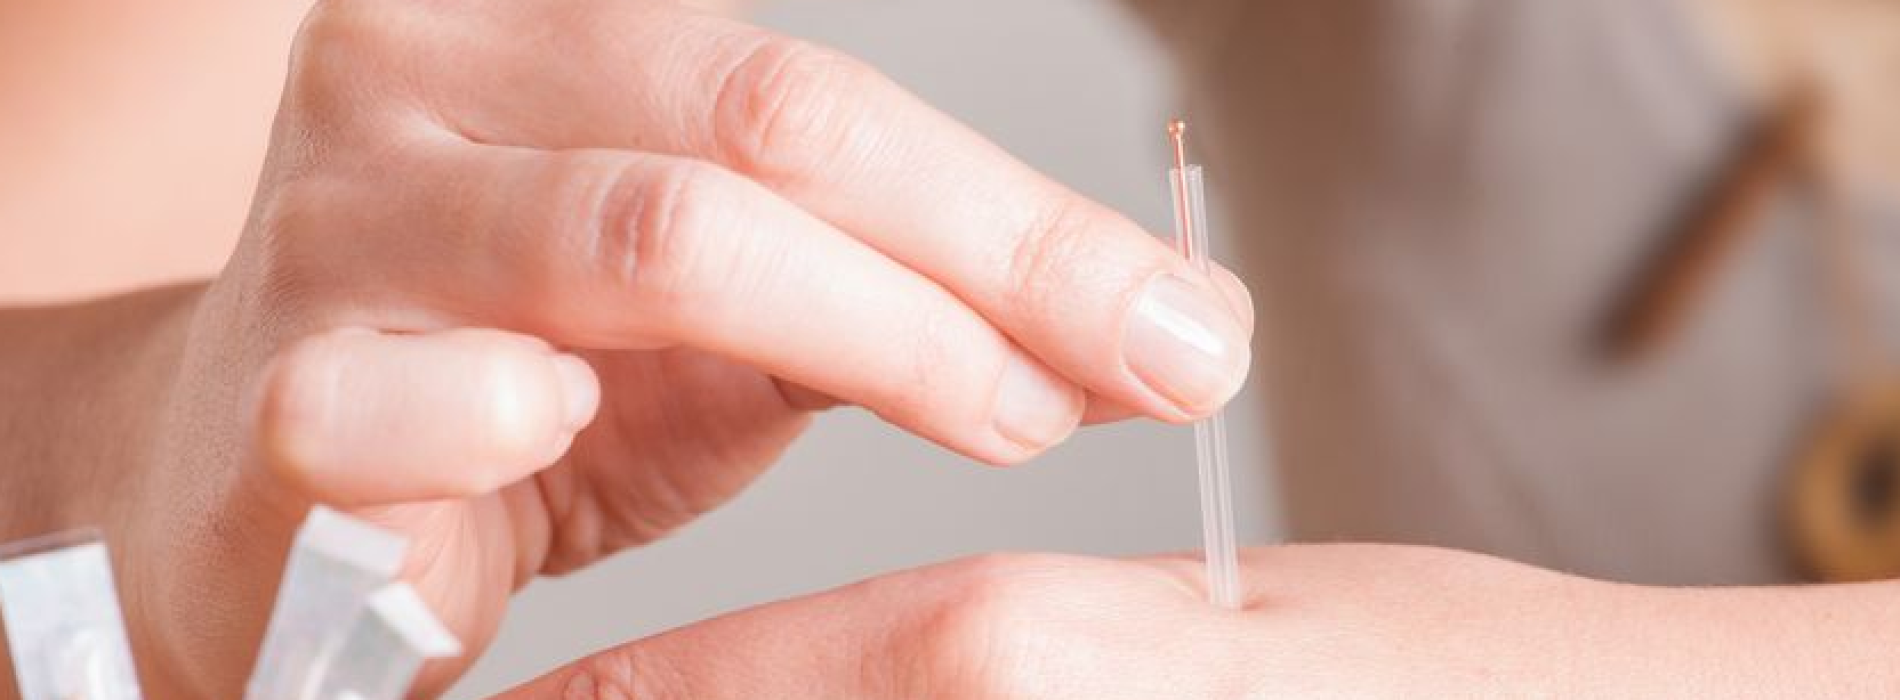 Baanbrekend onderzoek: acupunctuur verslaat geïnjecteerde morfine tegen pijn